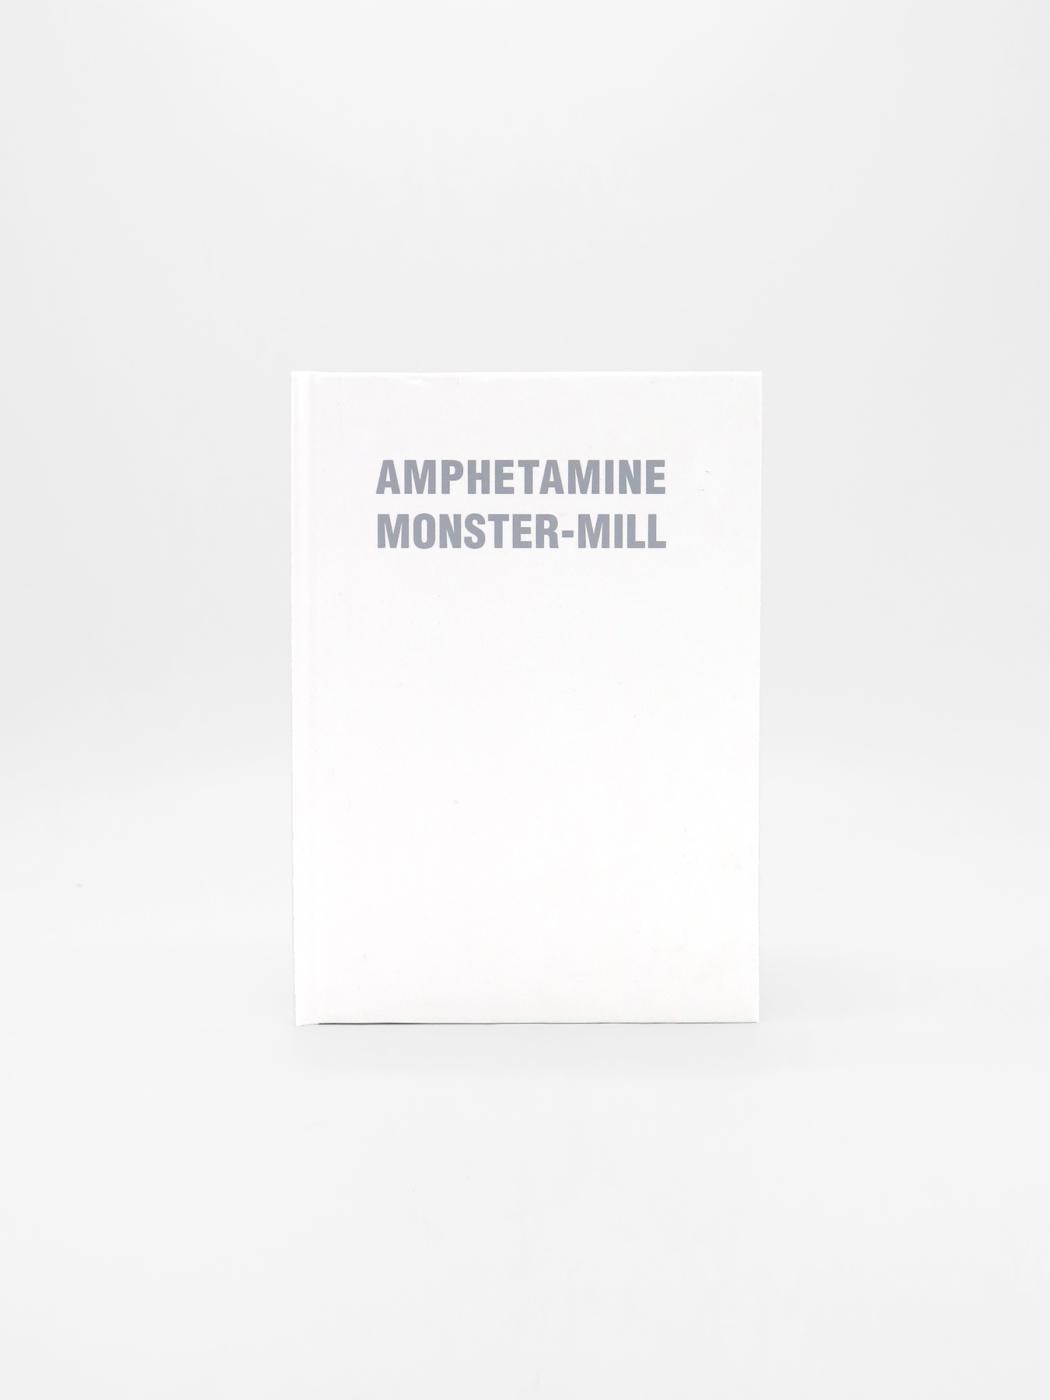 Steven Parrino, Amphetamine Monster-Mill